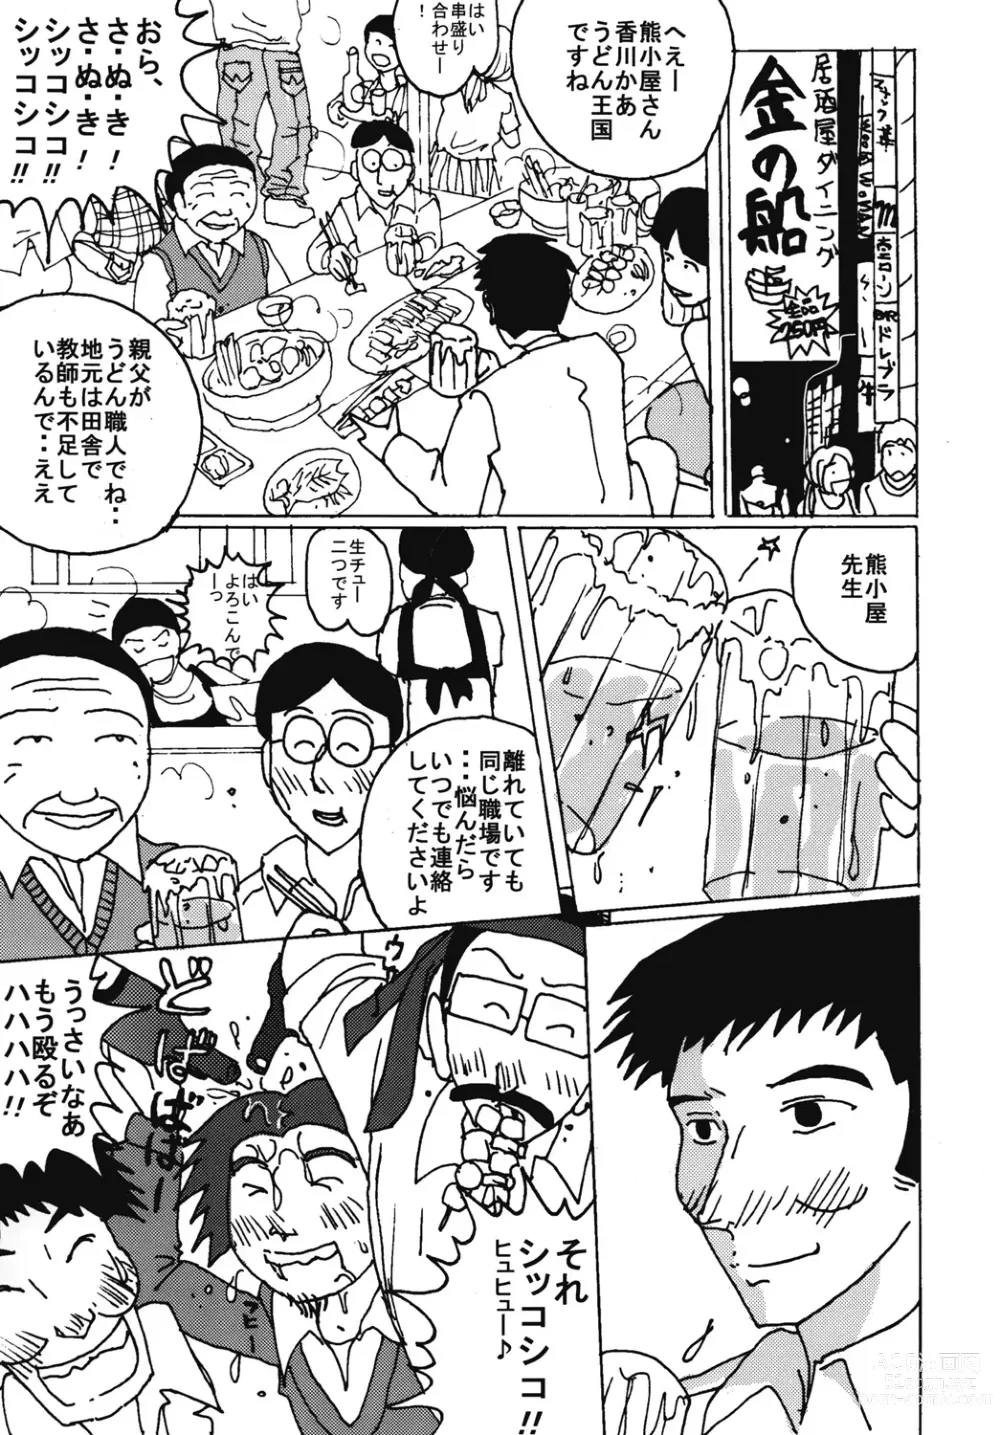 Page 2 of doujinshi Mune Ippai no Dizzy